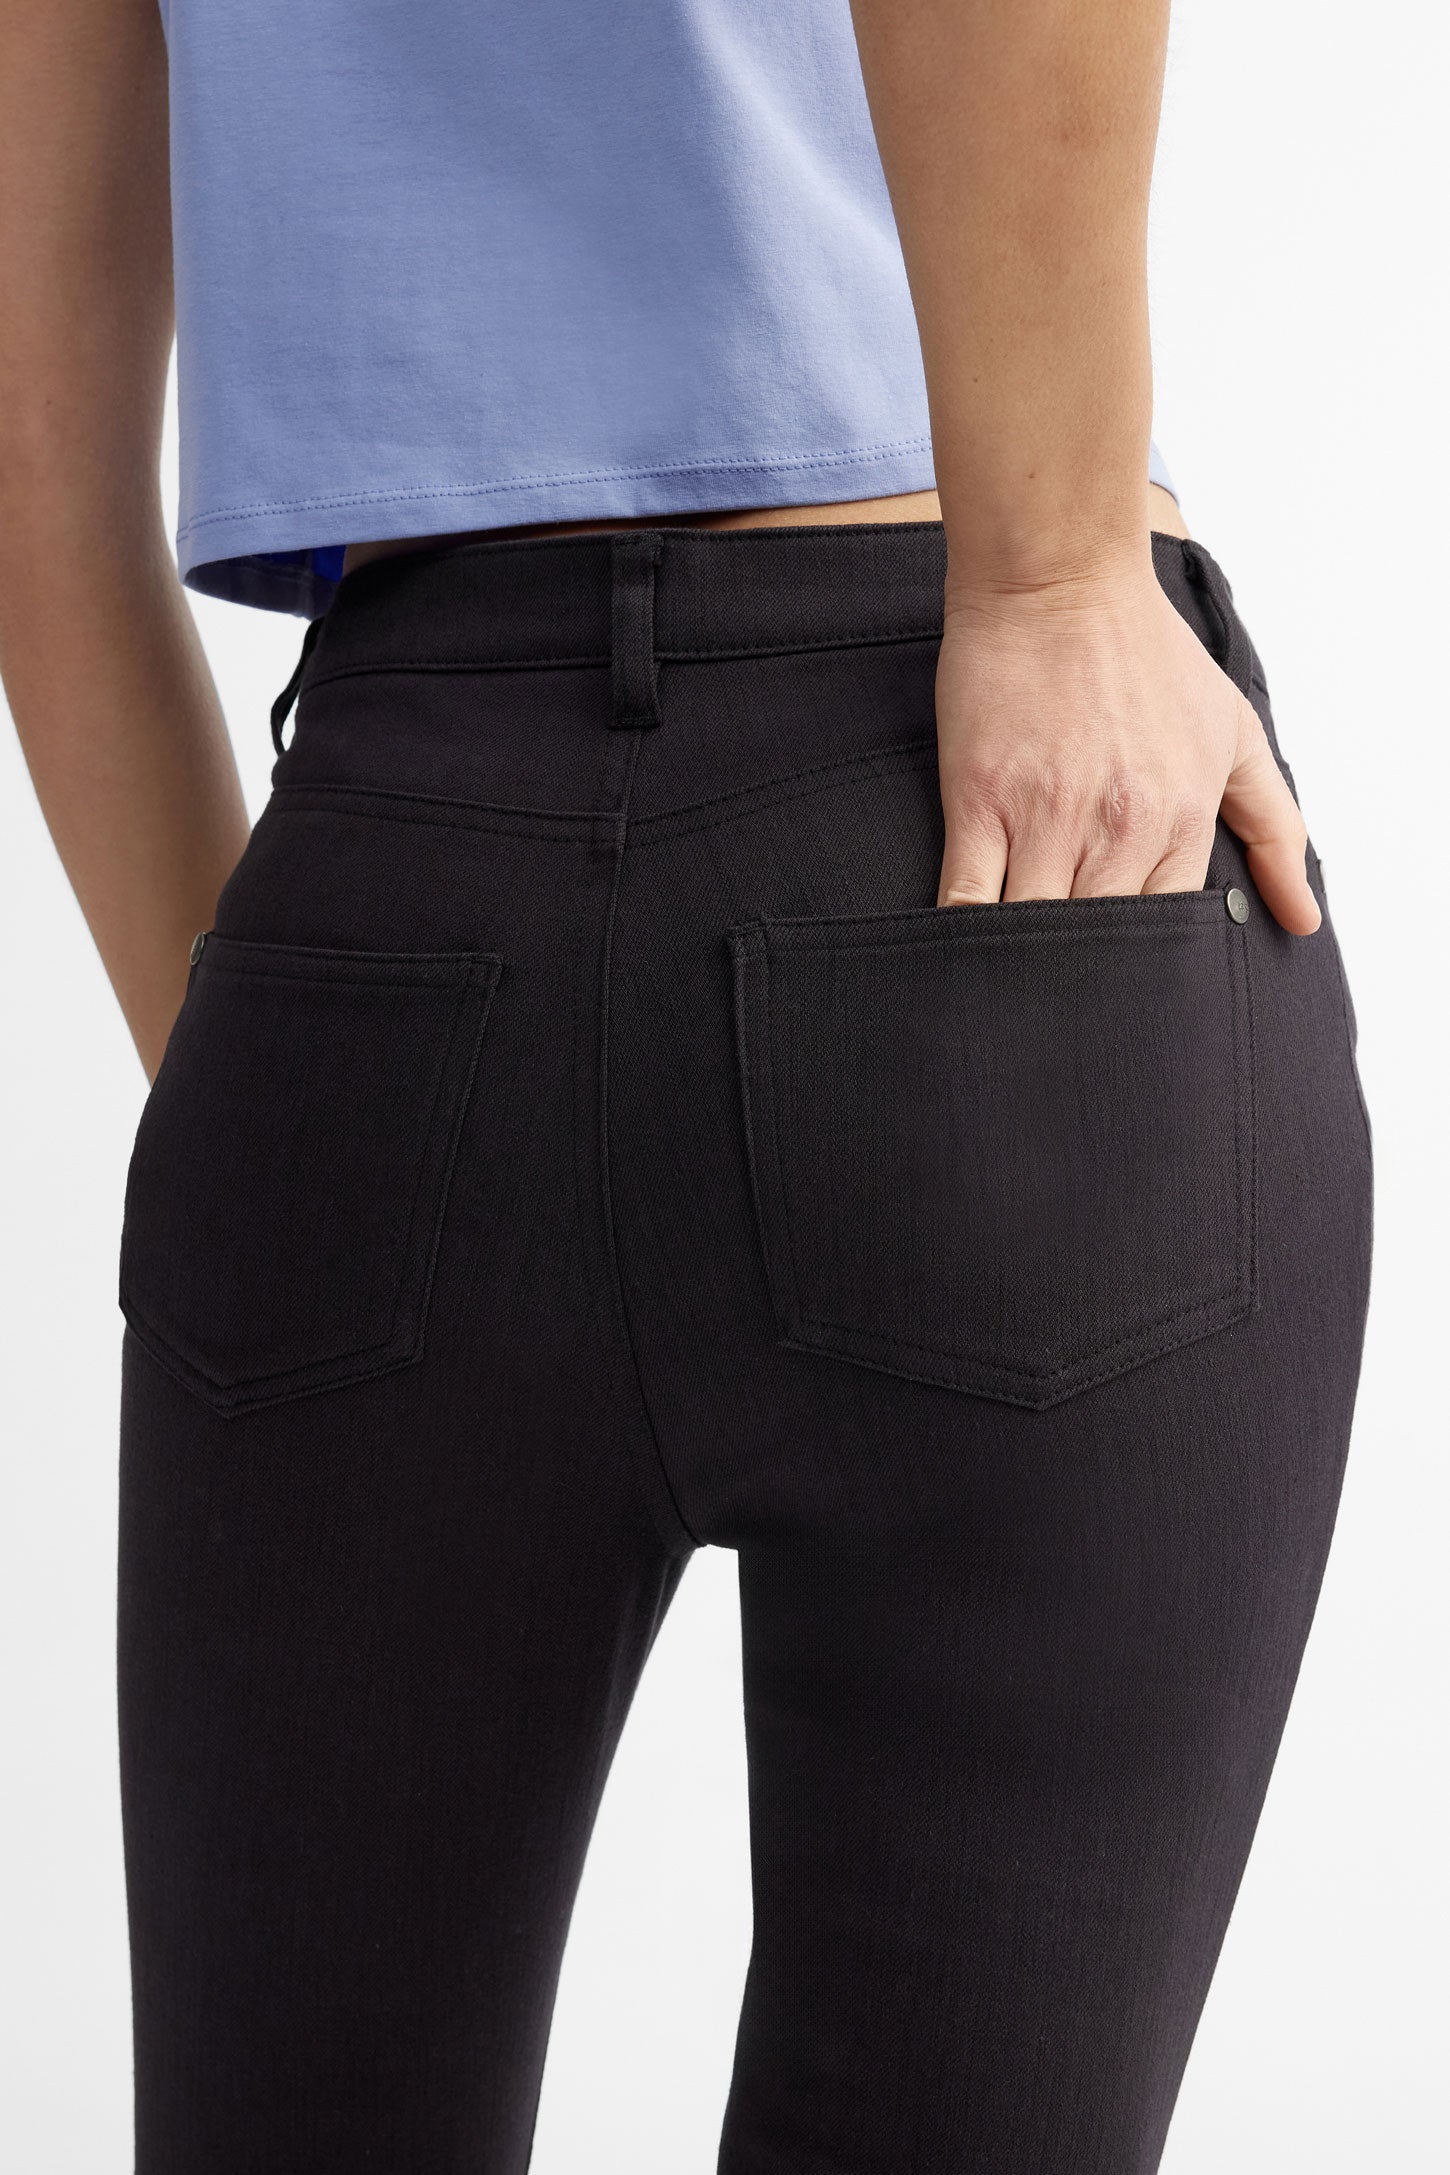 Capri 5 poches coupe ajustée en coton - Femme && NOIR